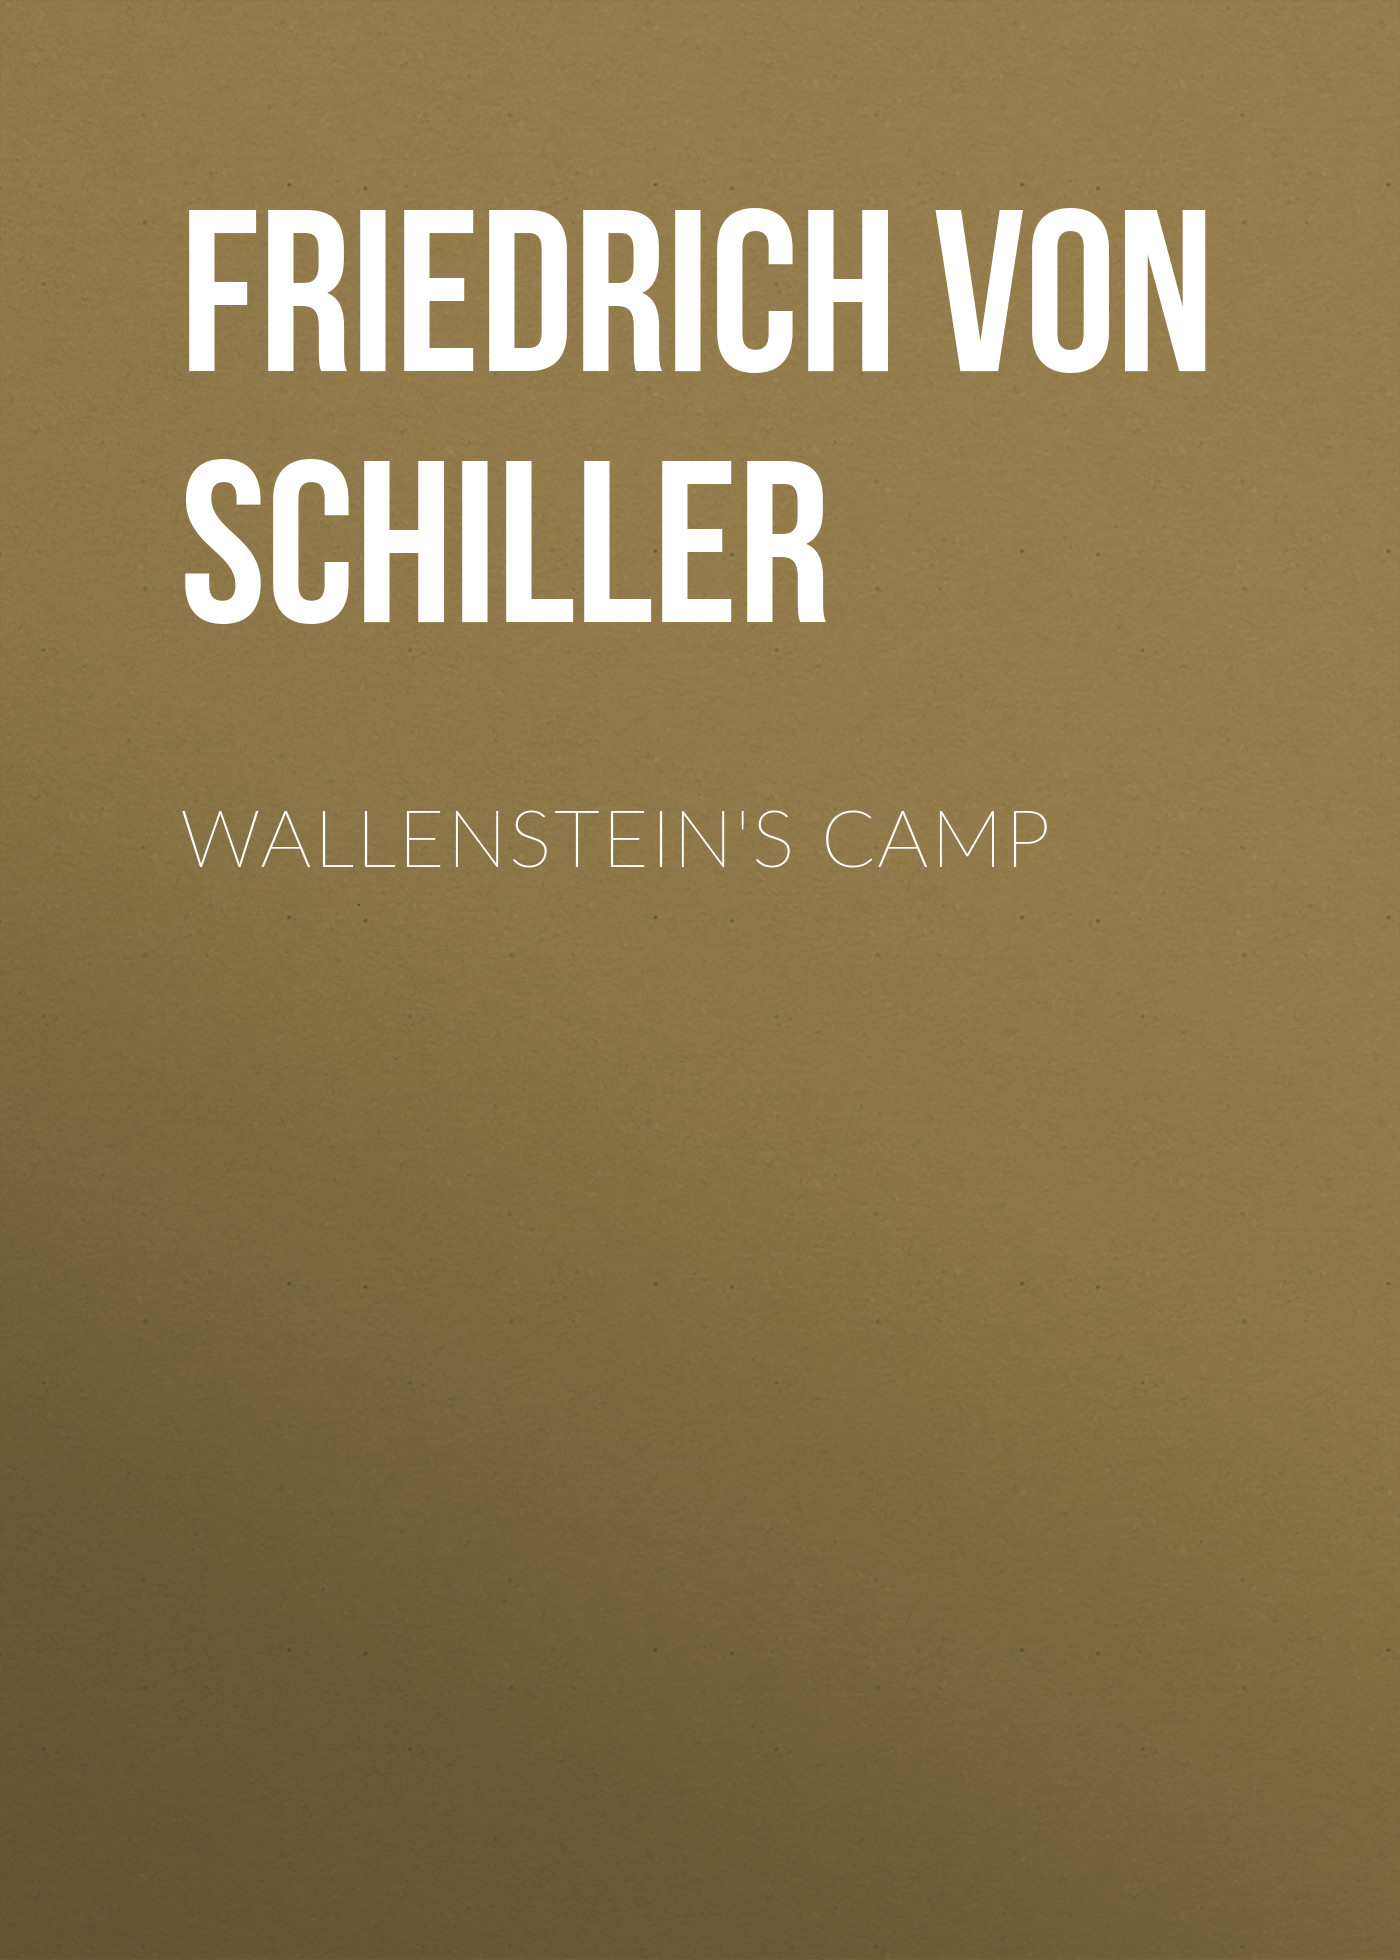 Книга Wallenstein's Camp из серии , созданная Friedrich Schiller, может относится к жанру Литература 18 века, Драматургия, Зарубежная старинная литература, Зарубежная классика, Зарубежная драматургия. Стоимость электронной книги Wallenstein's Camp с идентификатором 25449652 составляет 0 руб.